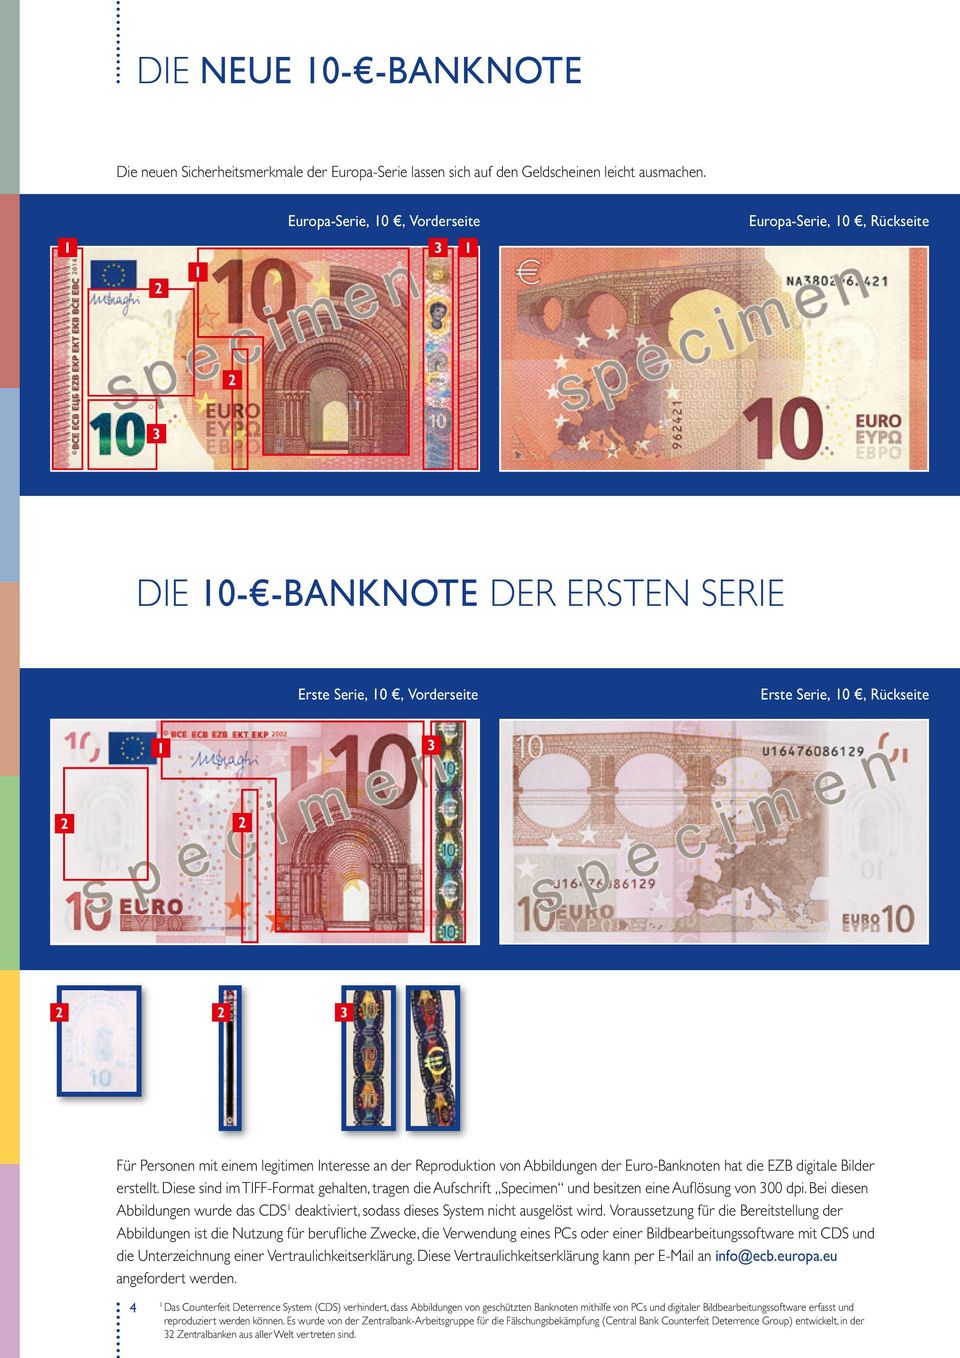 Interesse an der Reproduktion von Abbildungen der Euro-Banknoten hat die EZB digitale Bilder erstellt.